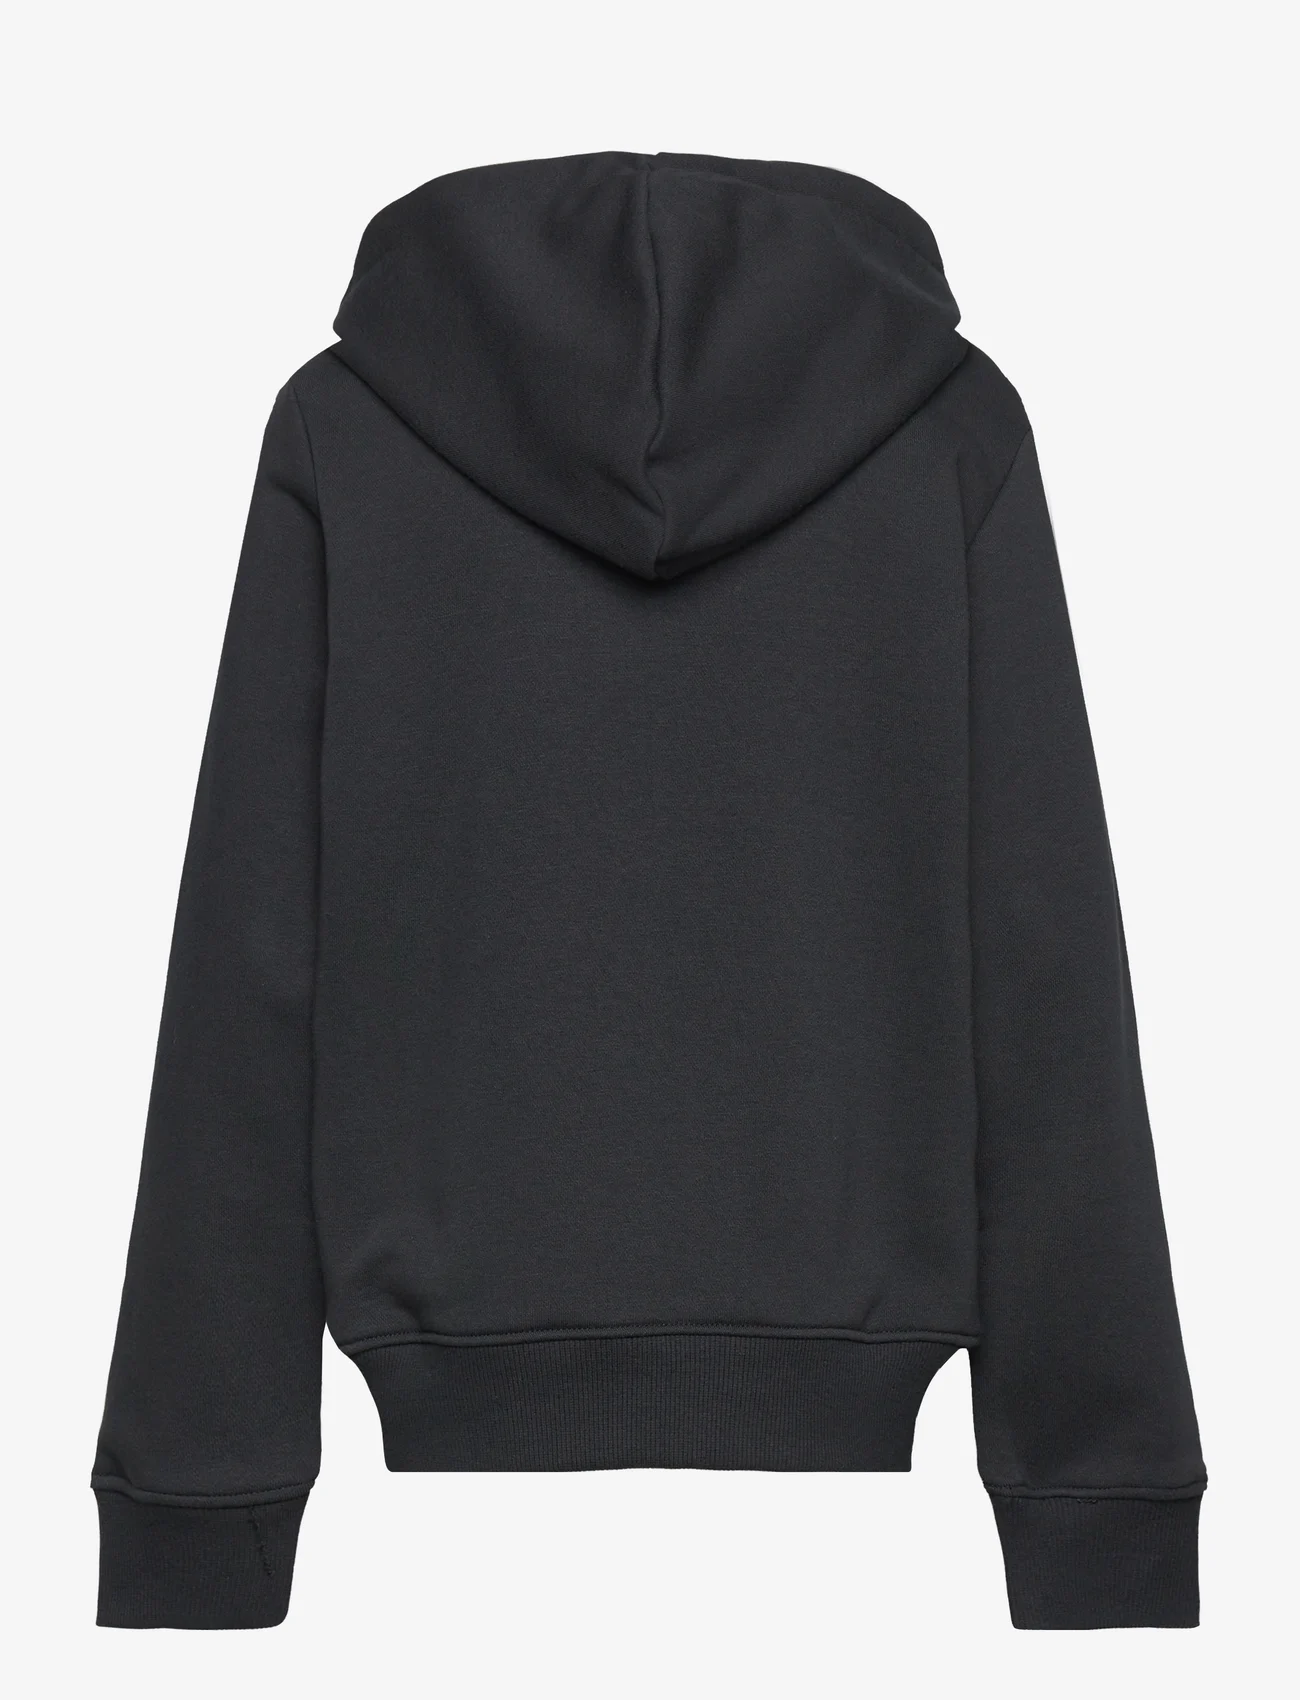 New Balance - NB Hoops Essentials Hoodie - hoodies - black - 1